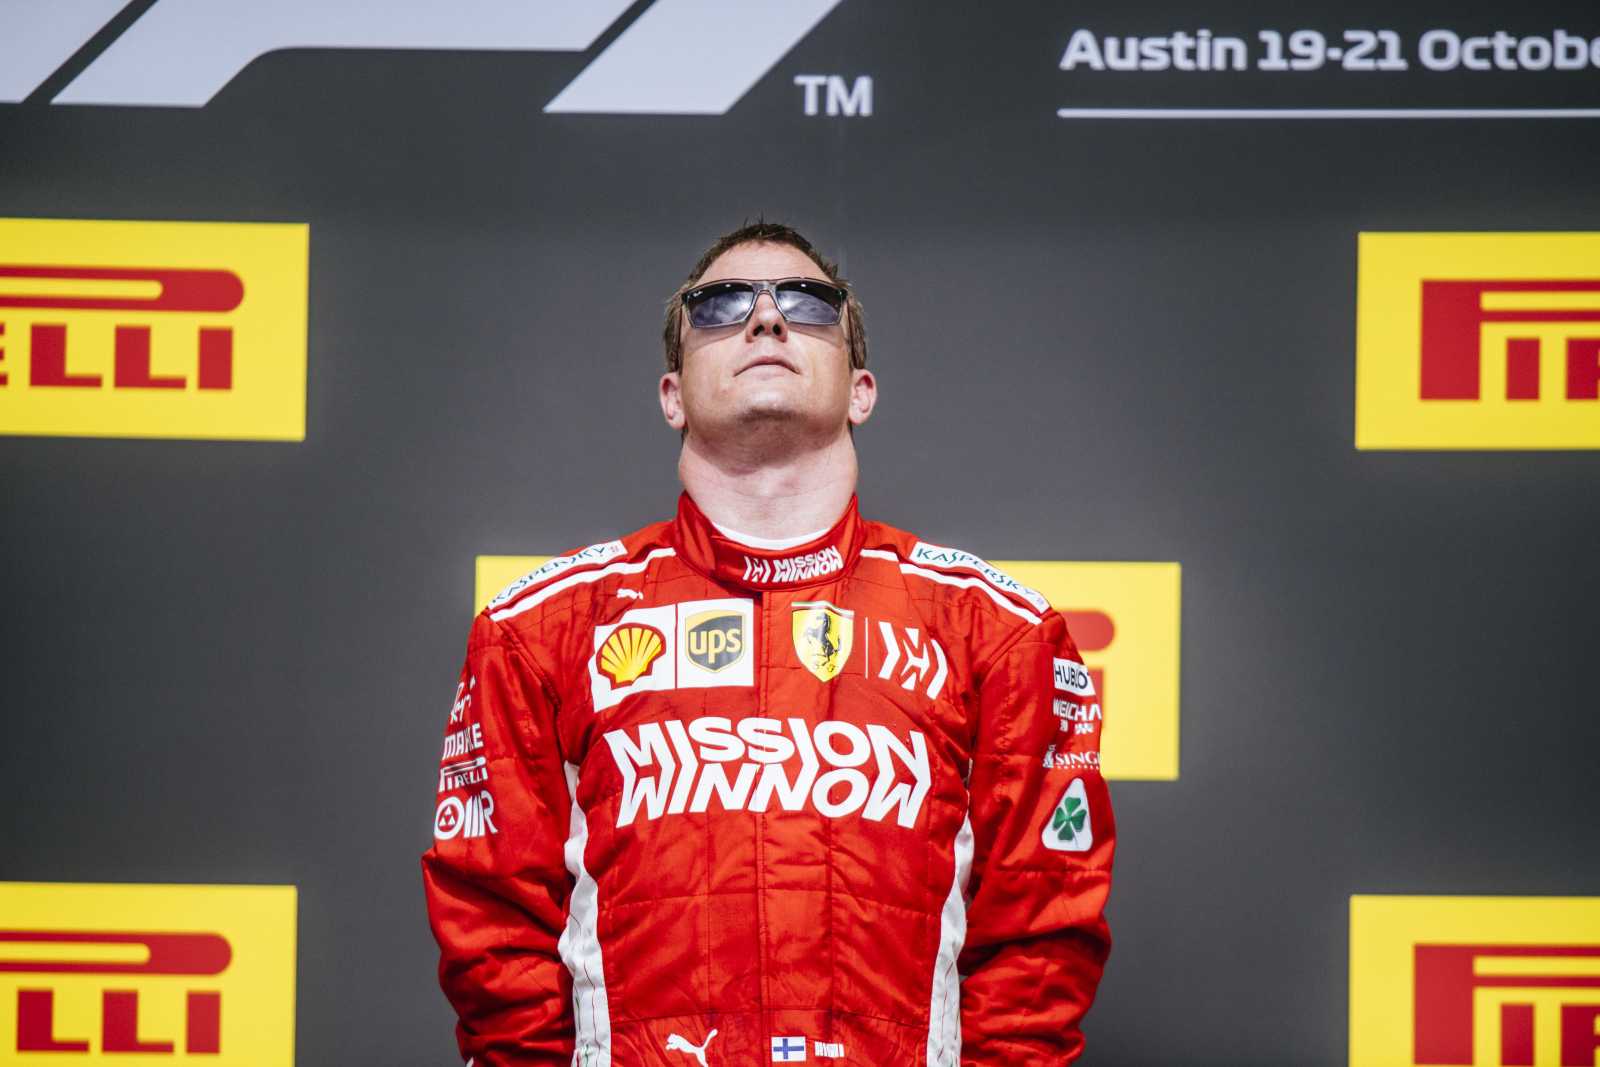 4º - Kimi Raikkonen - Nacionalidade: Finlandês - Quantidade de pódios conquistados com a Ferrari: 52